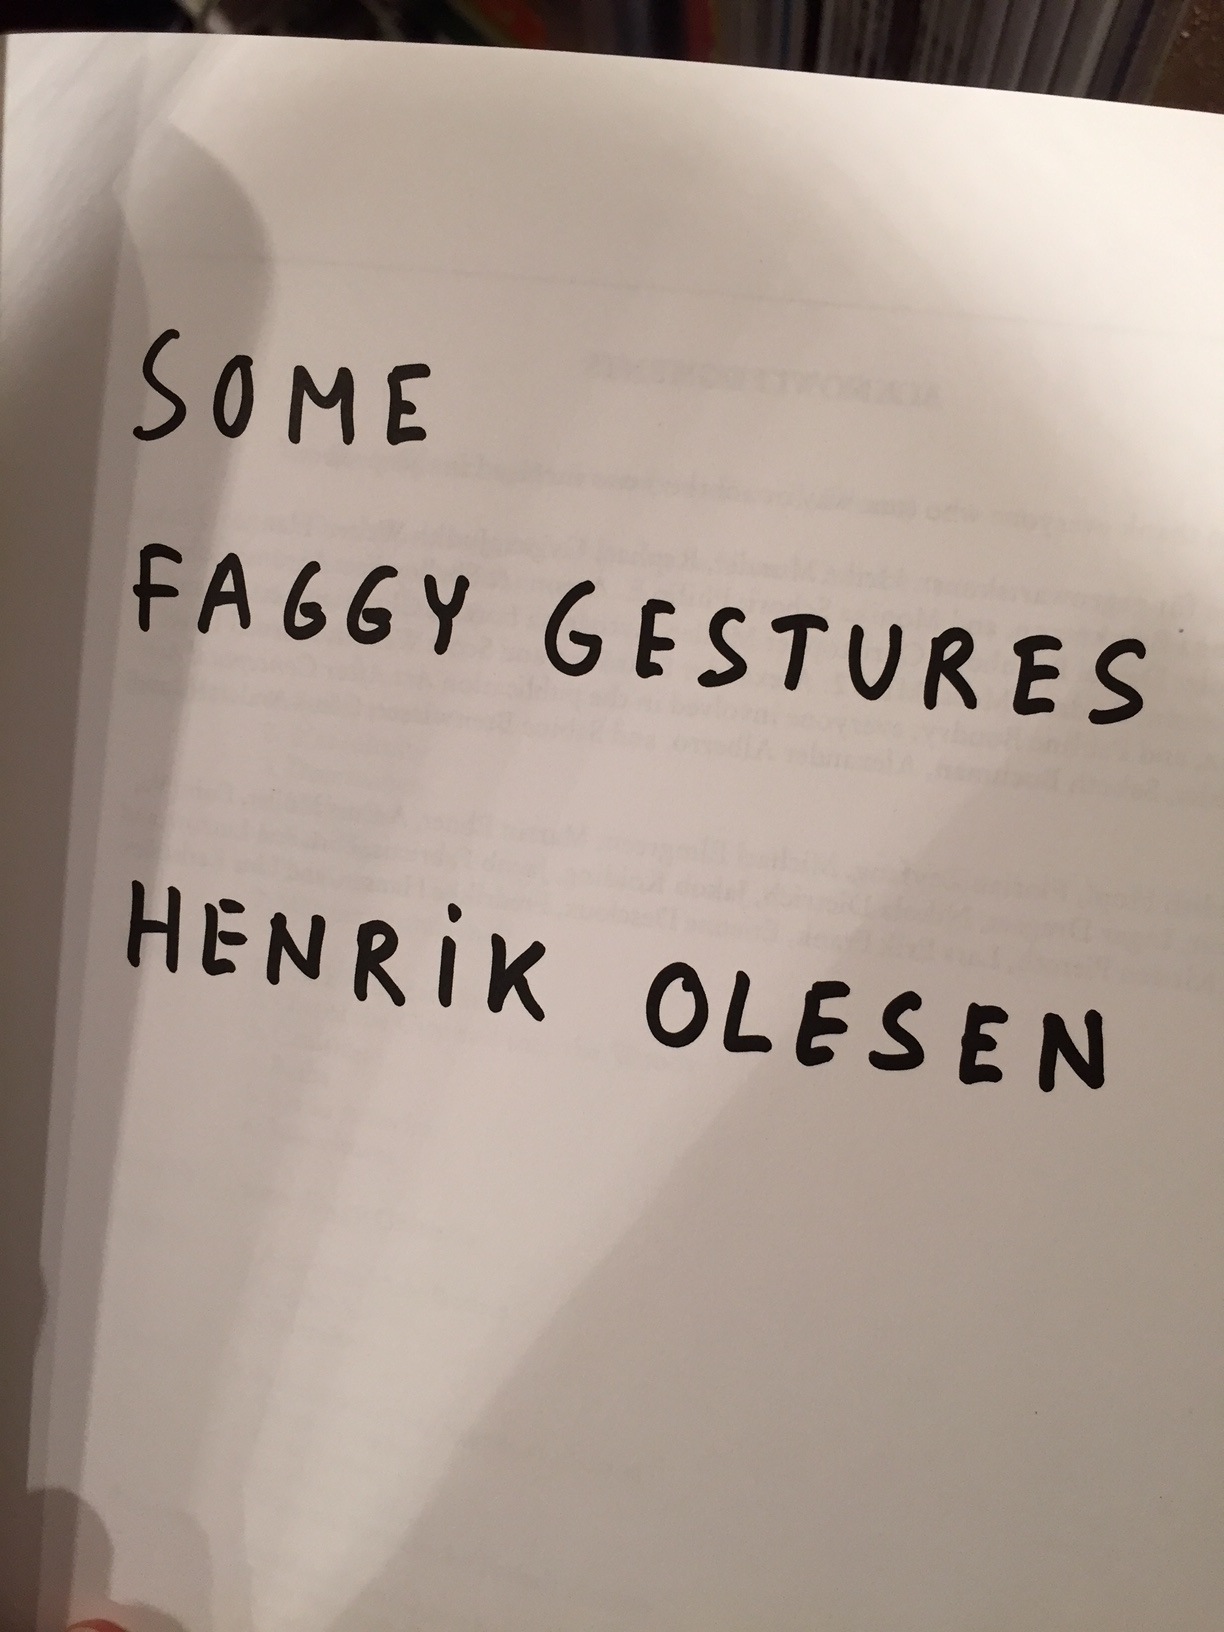 OLESEN, Henrik - Some Faggy Gestures